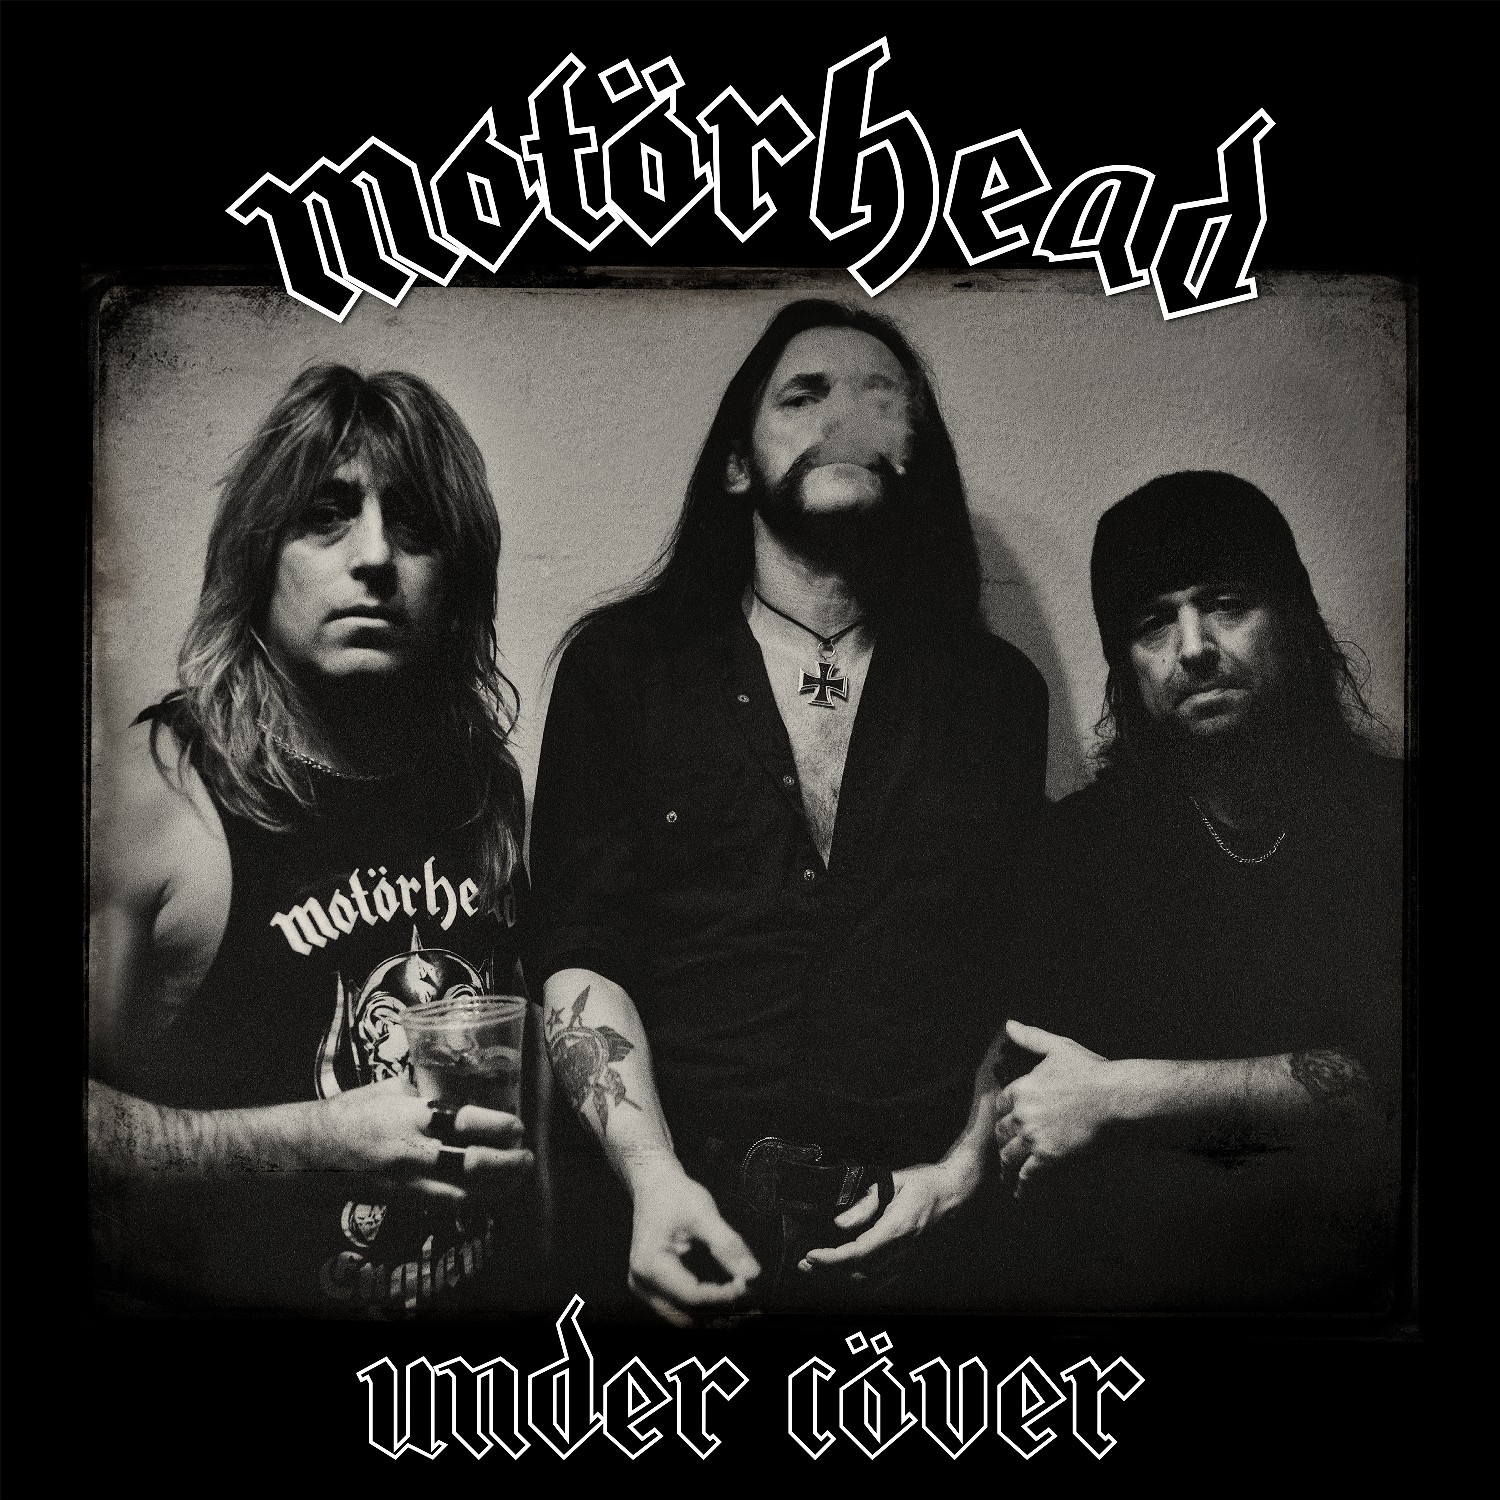 The Official Motörhead Website